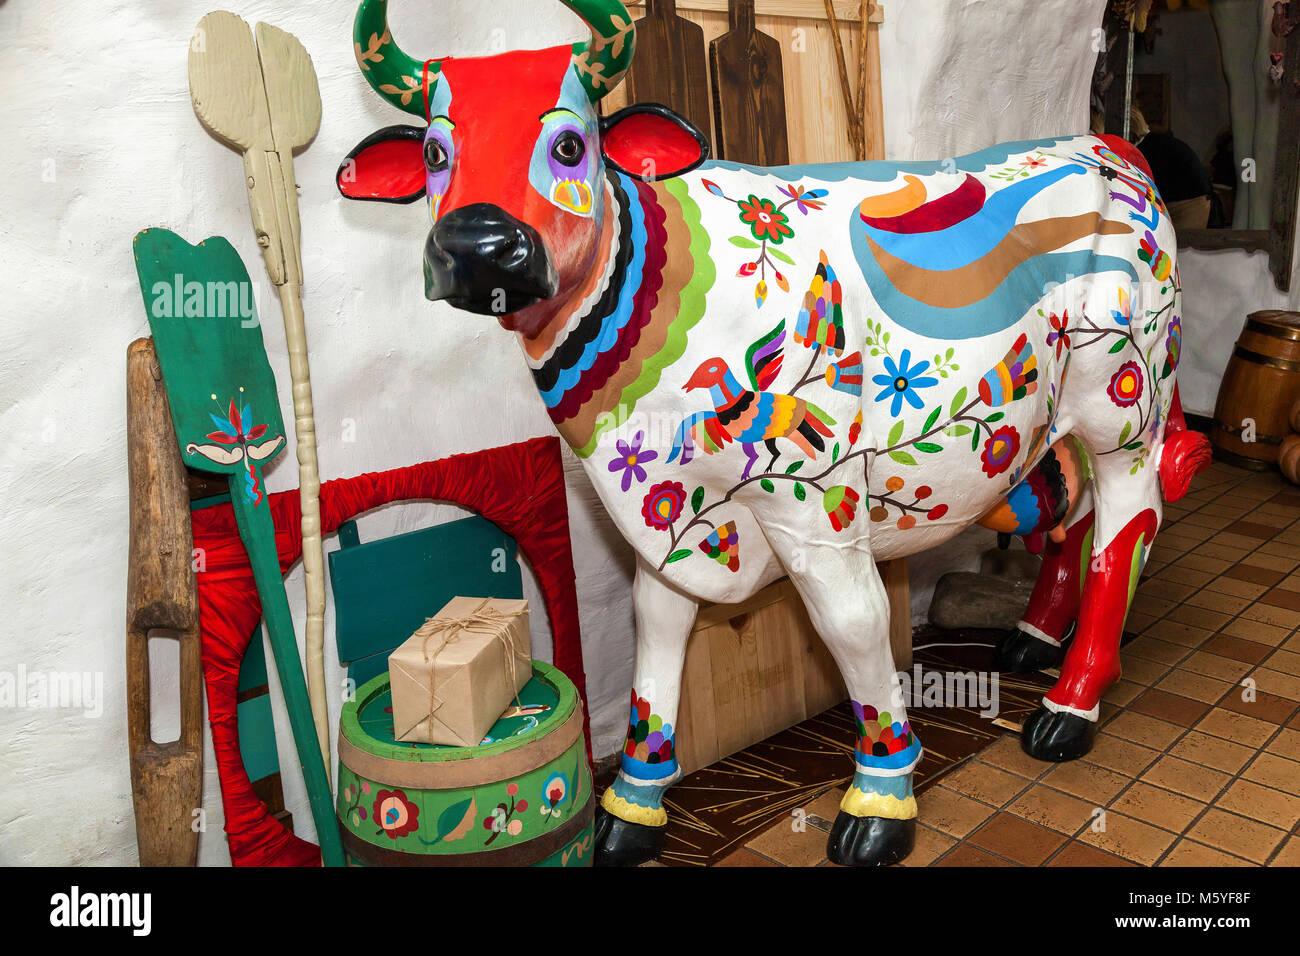 Ukraine Kiew September 14, 2014: Skulptur einer Kuh mit Ornamenten und Zeichnungen der ukrainischen Stil, eine Kuh steht in einem Raum mit alten Objekten Stockfoto